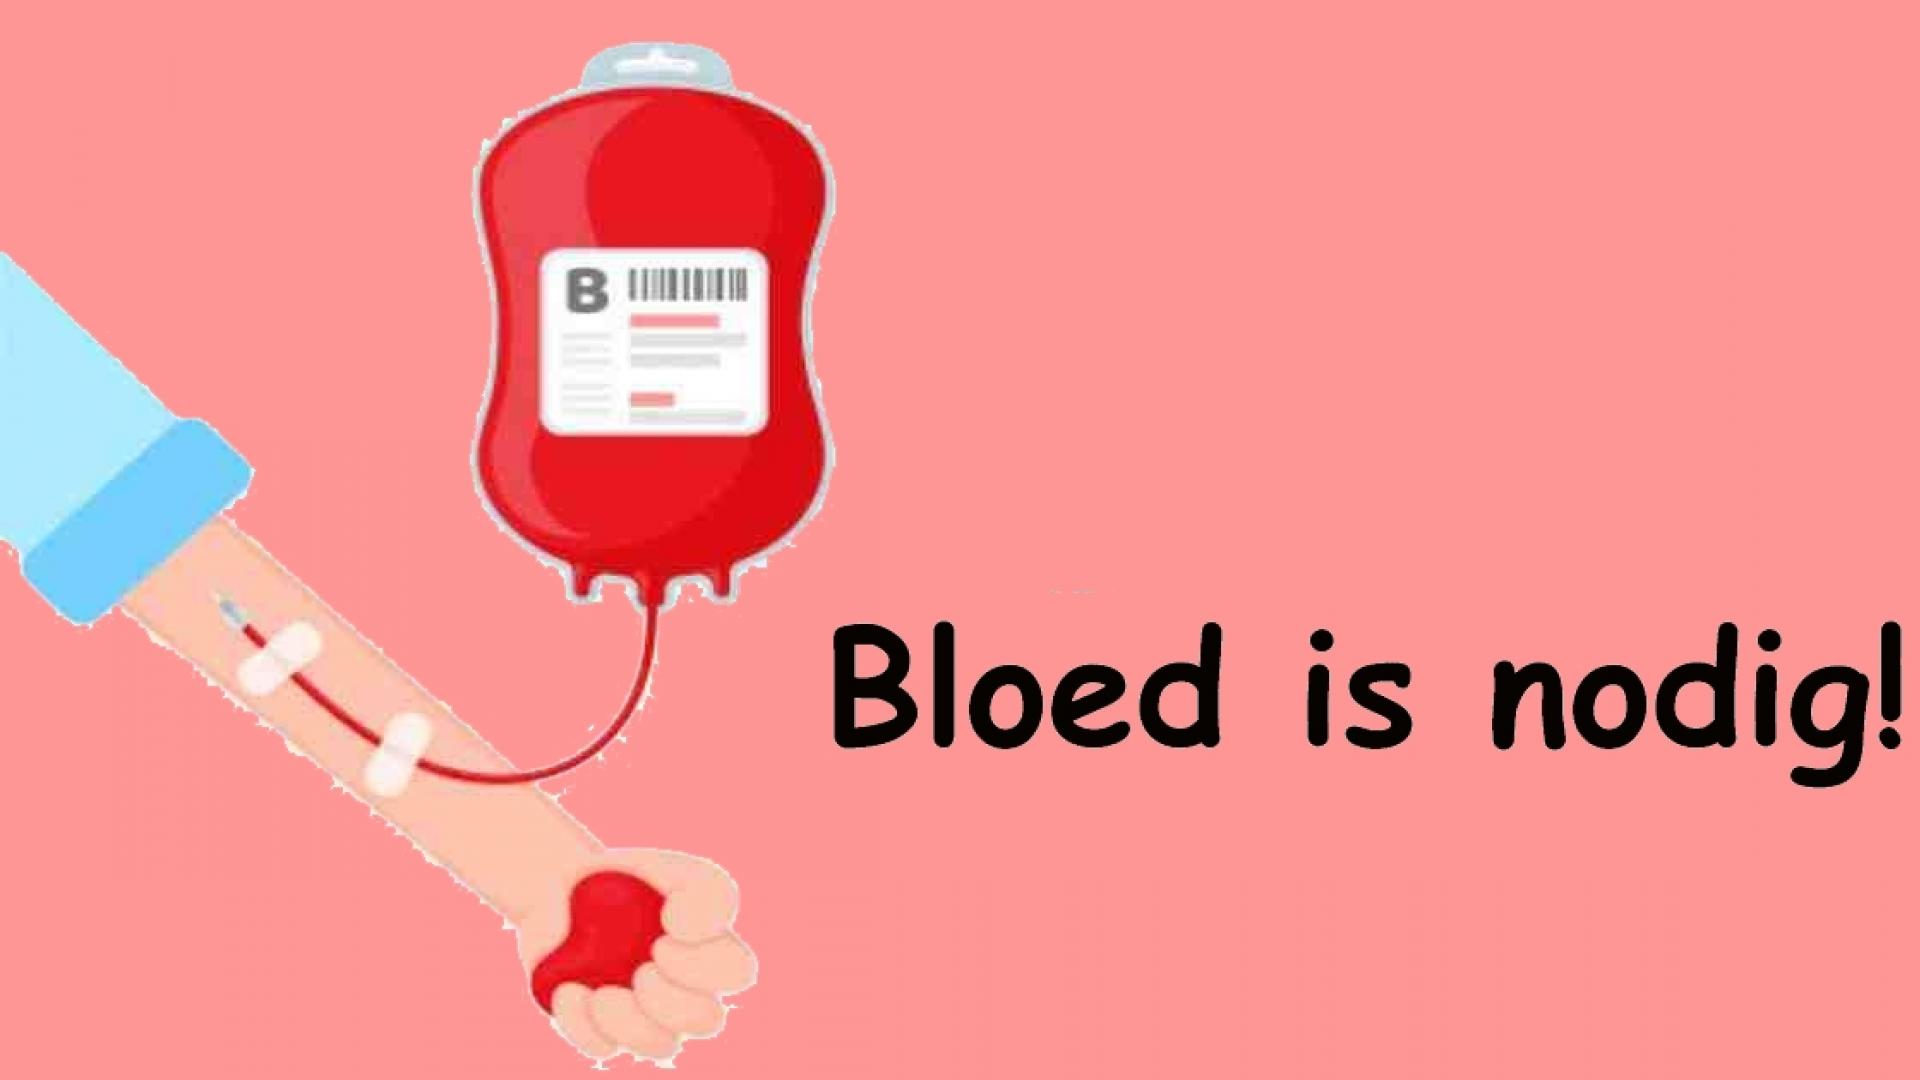 Affiche met afbeelding van bloeddonatie en tekst "Bloed is nodig"